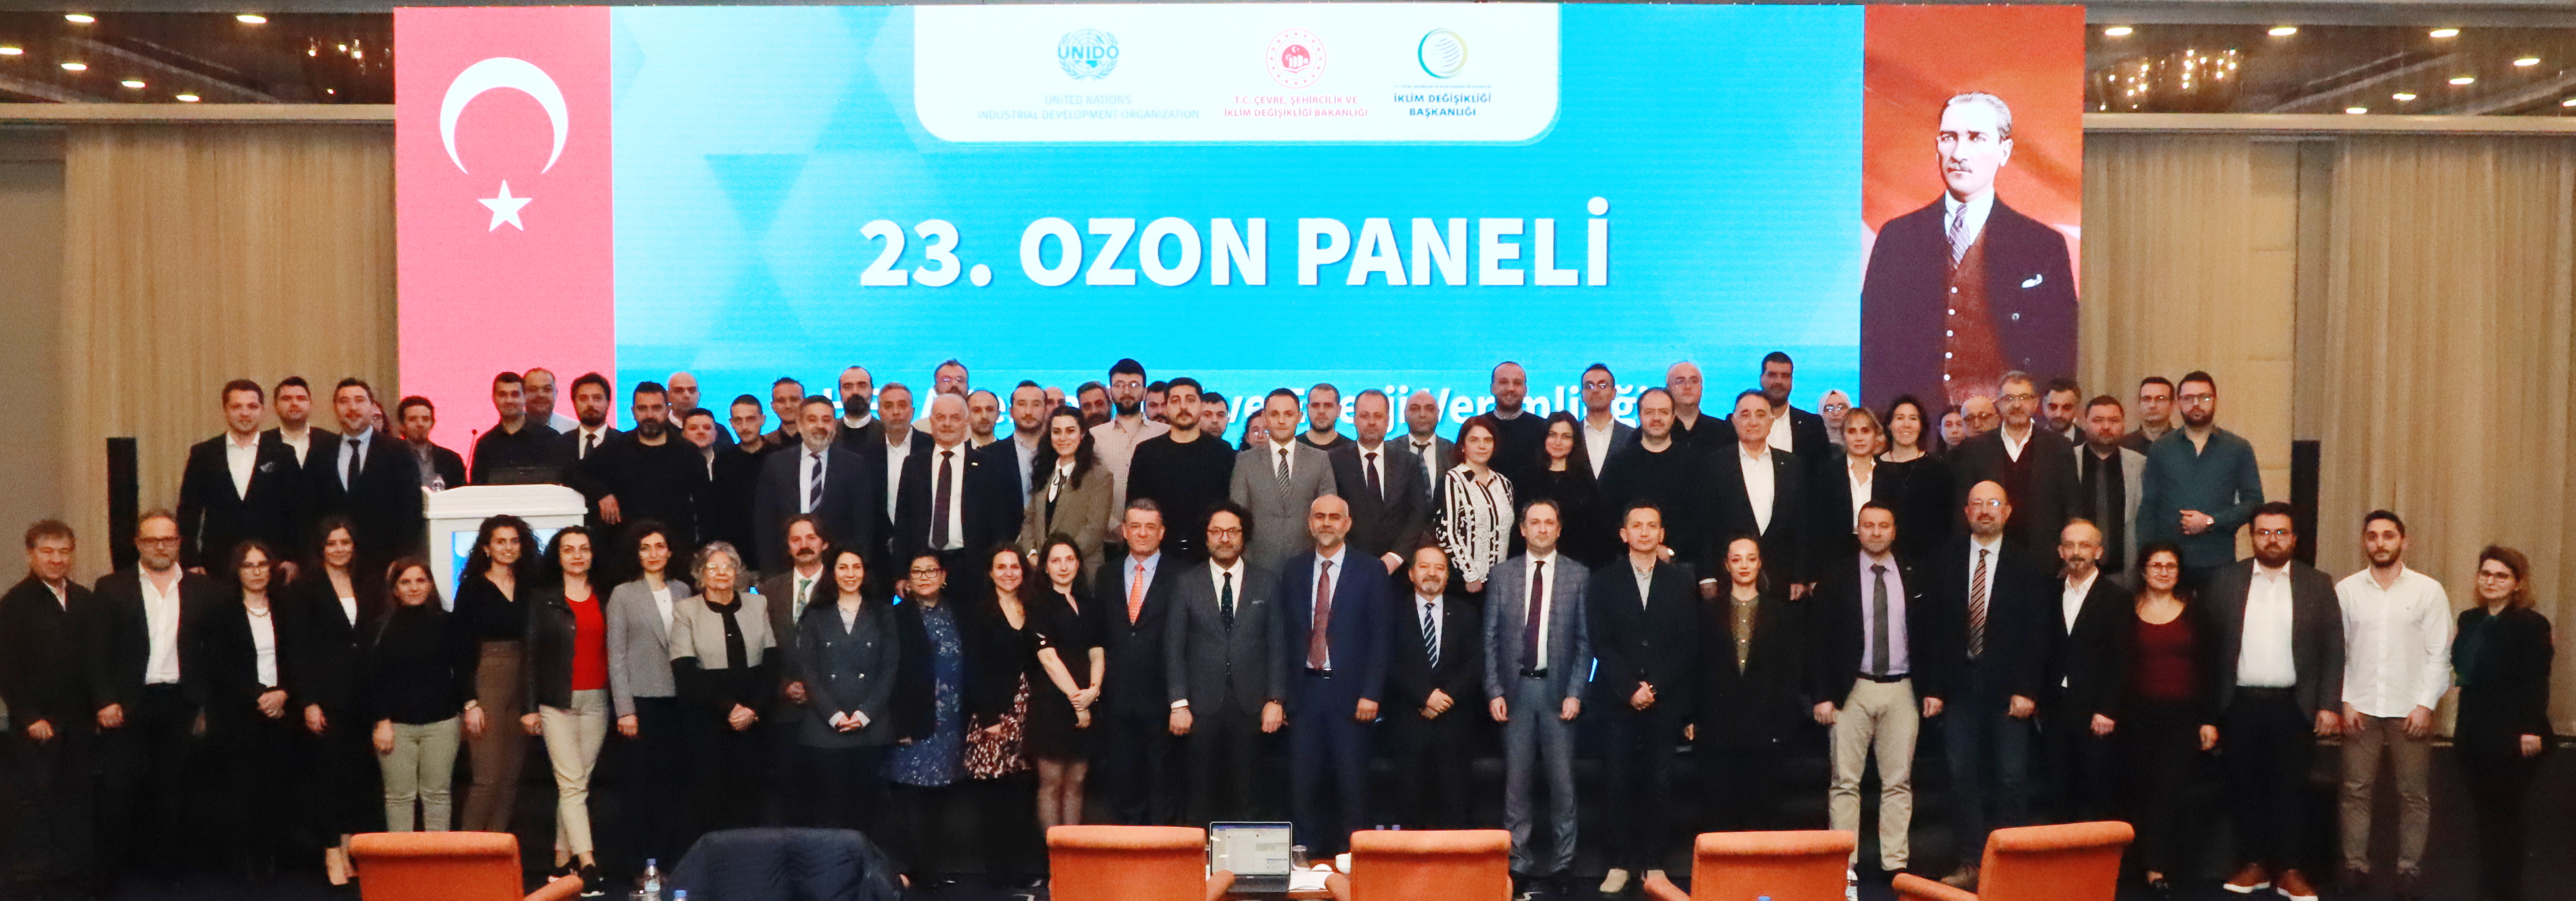 23. Ozon Paneli Sektörün Yoğun İlgisiyle İstanbul’da Gerçekleşti